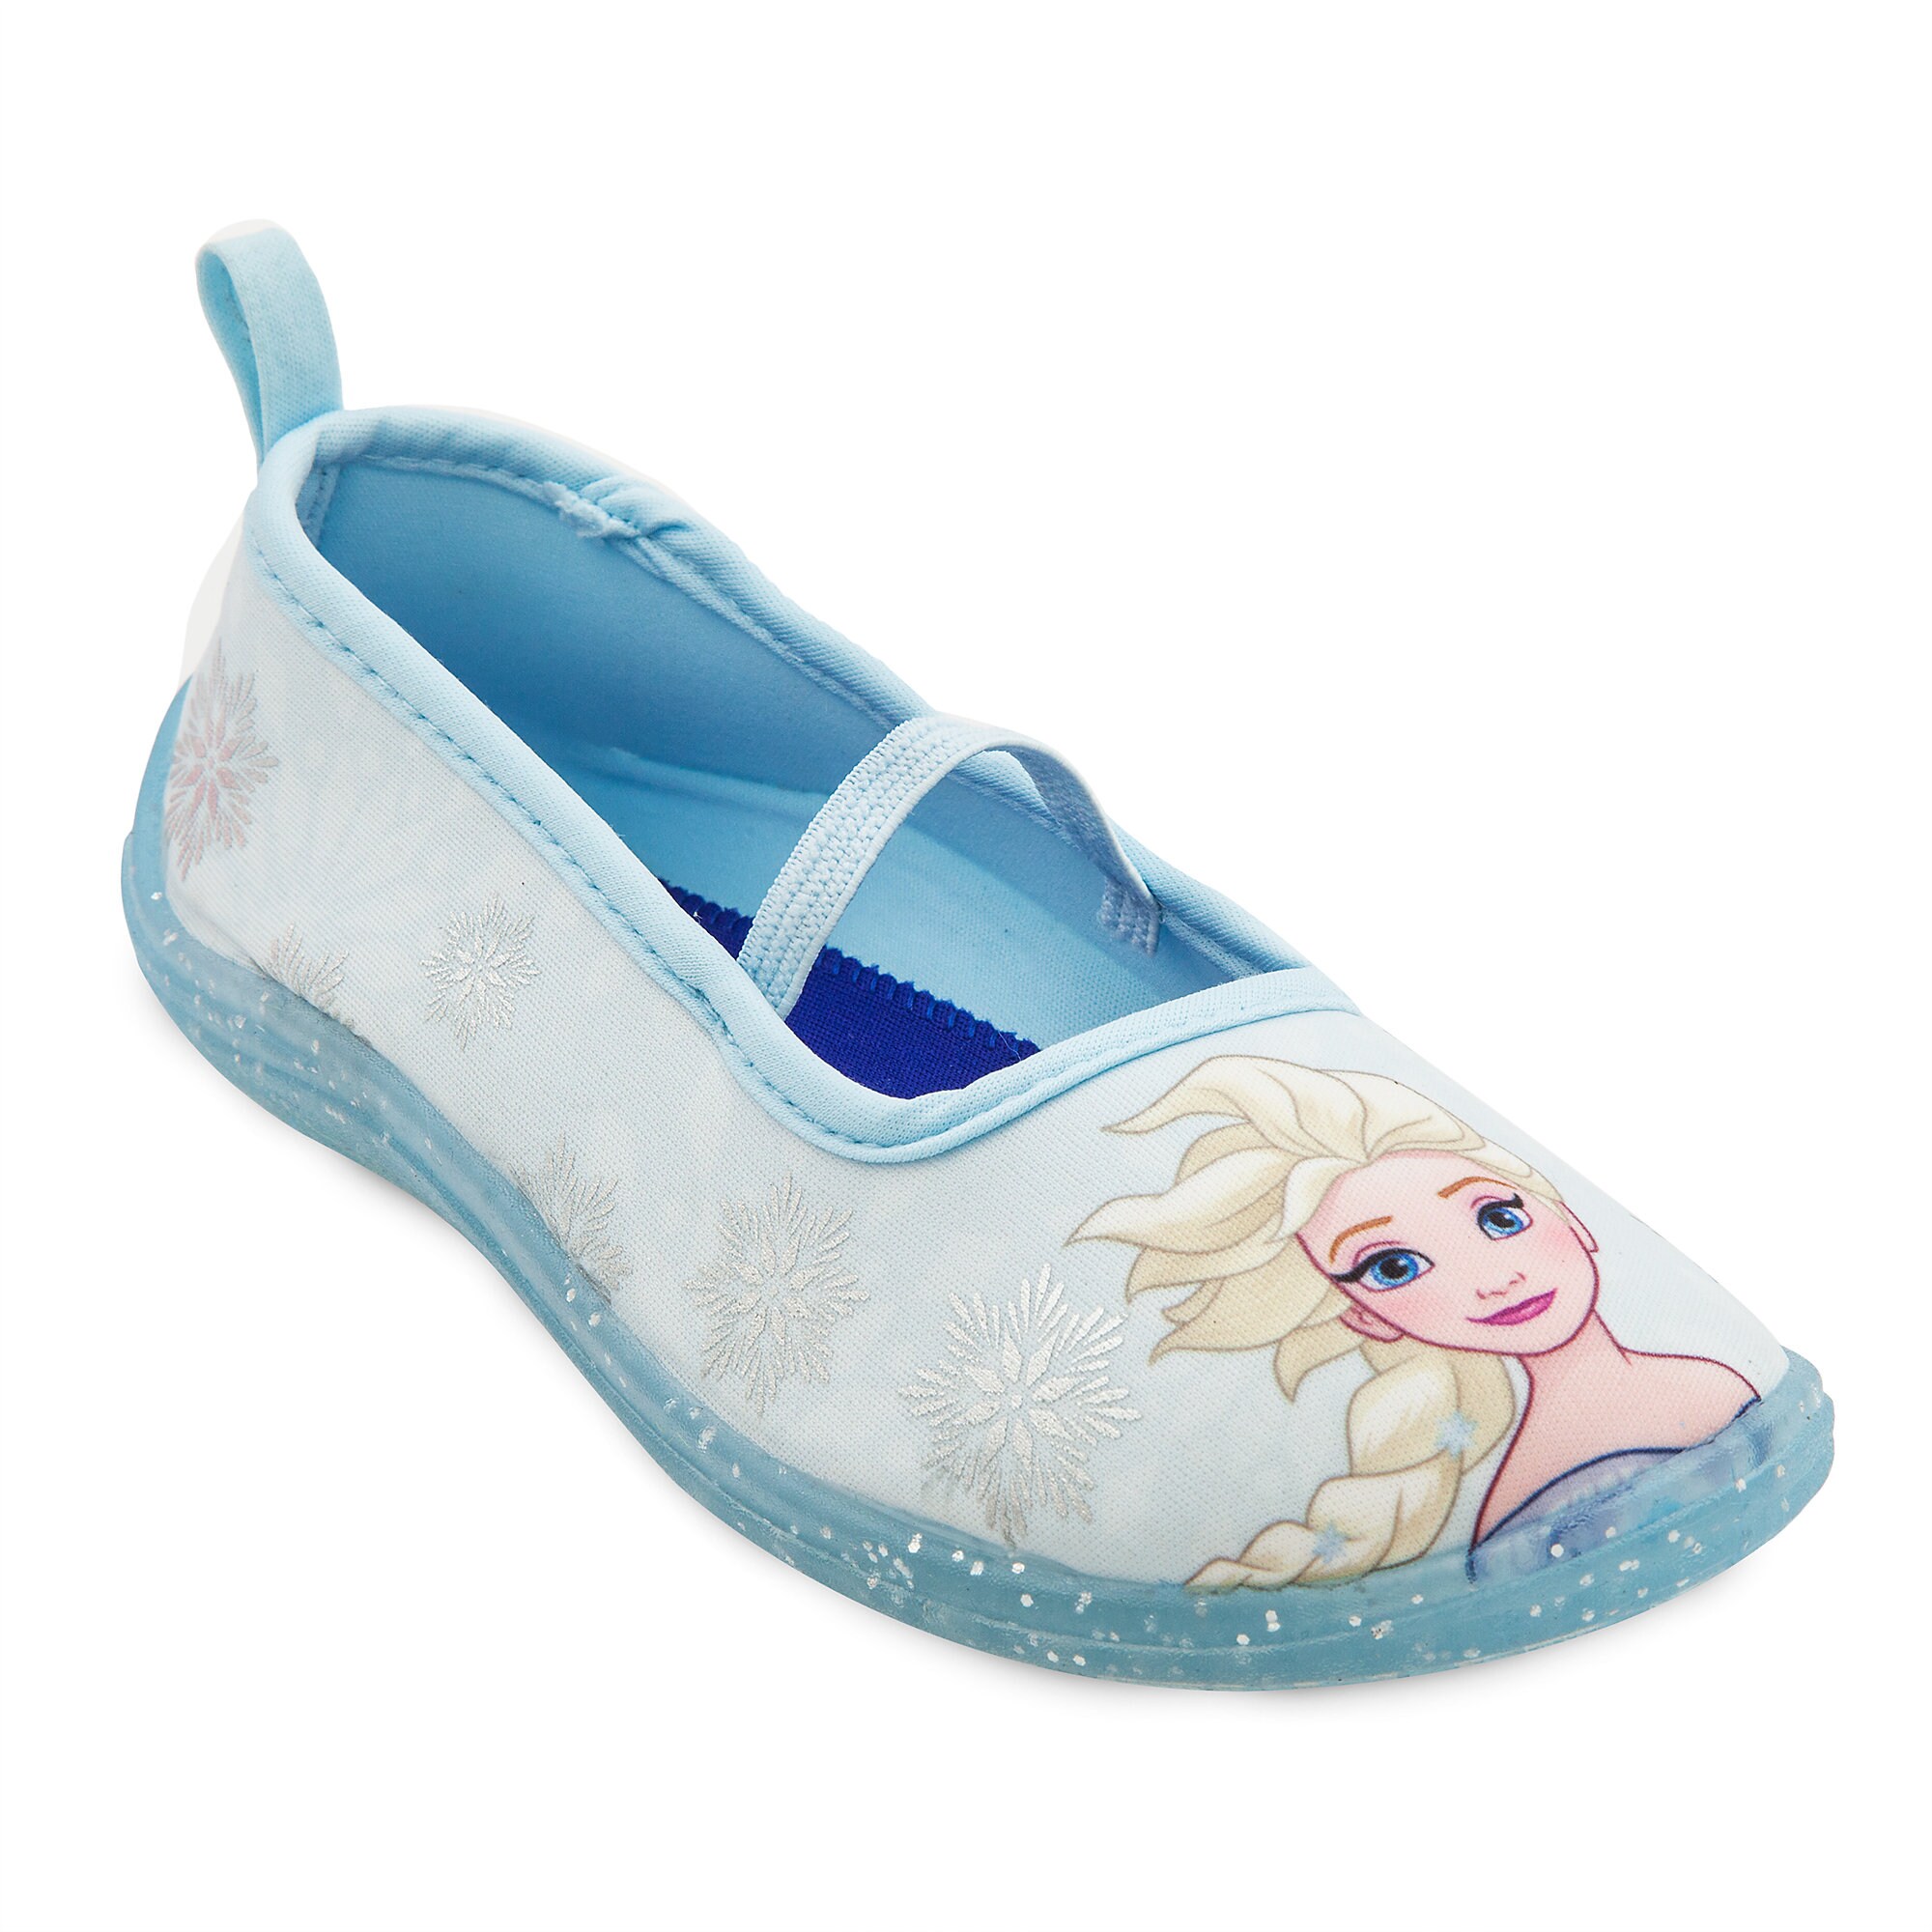 Elsa Swim Shoes for Kids - Frozen